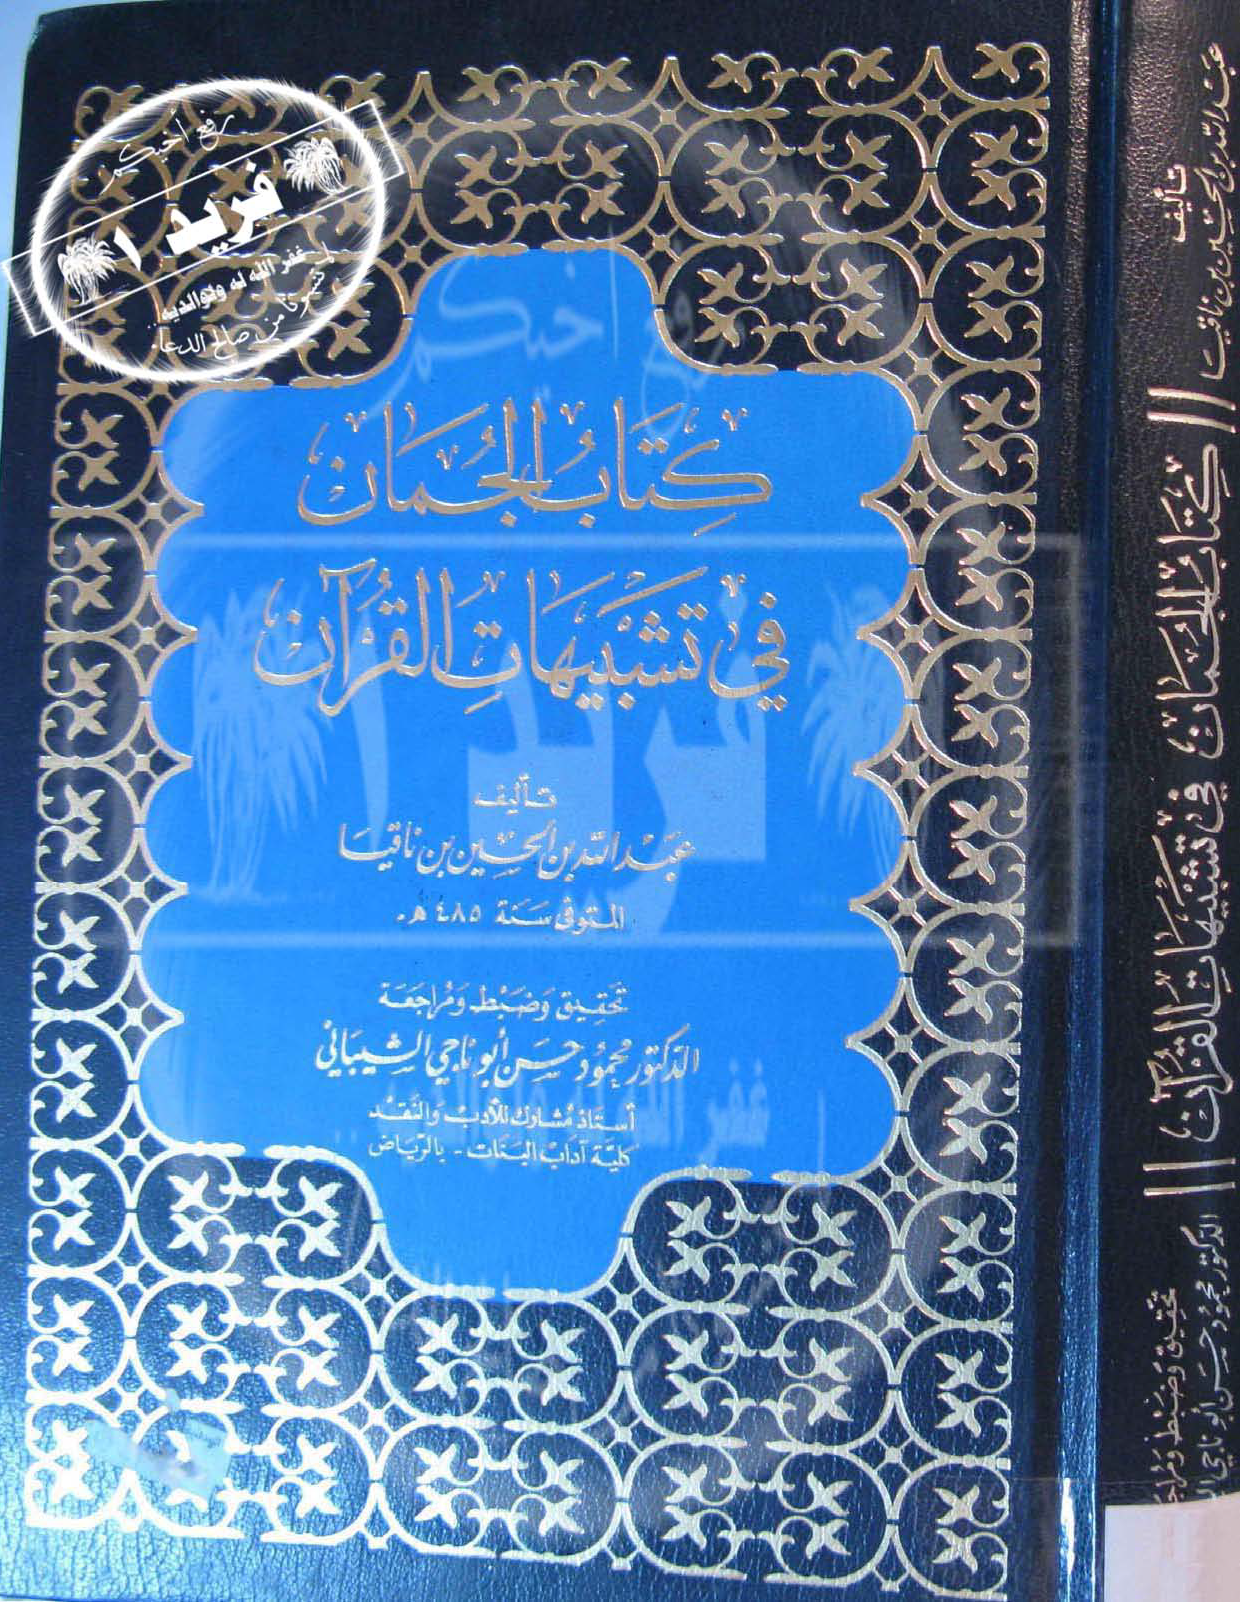 تحميل كتاب الجمان في تشبيهات القرآن للمؤلف: الإمام أبو القاسم عبد الله بن محمد بن الحسين بن داود بن ناقيا (ت 485)